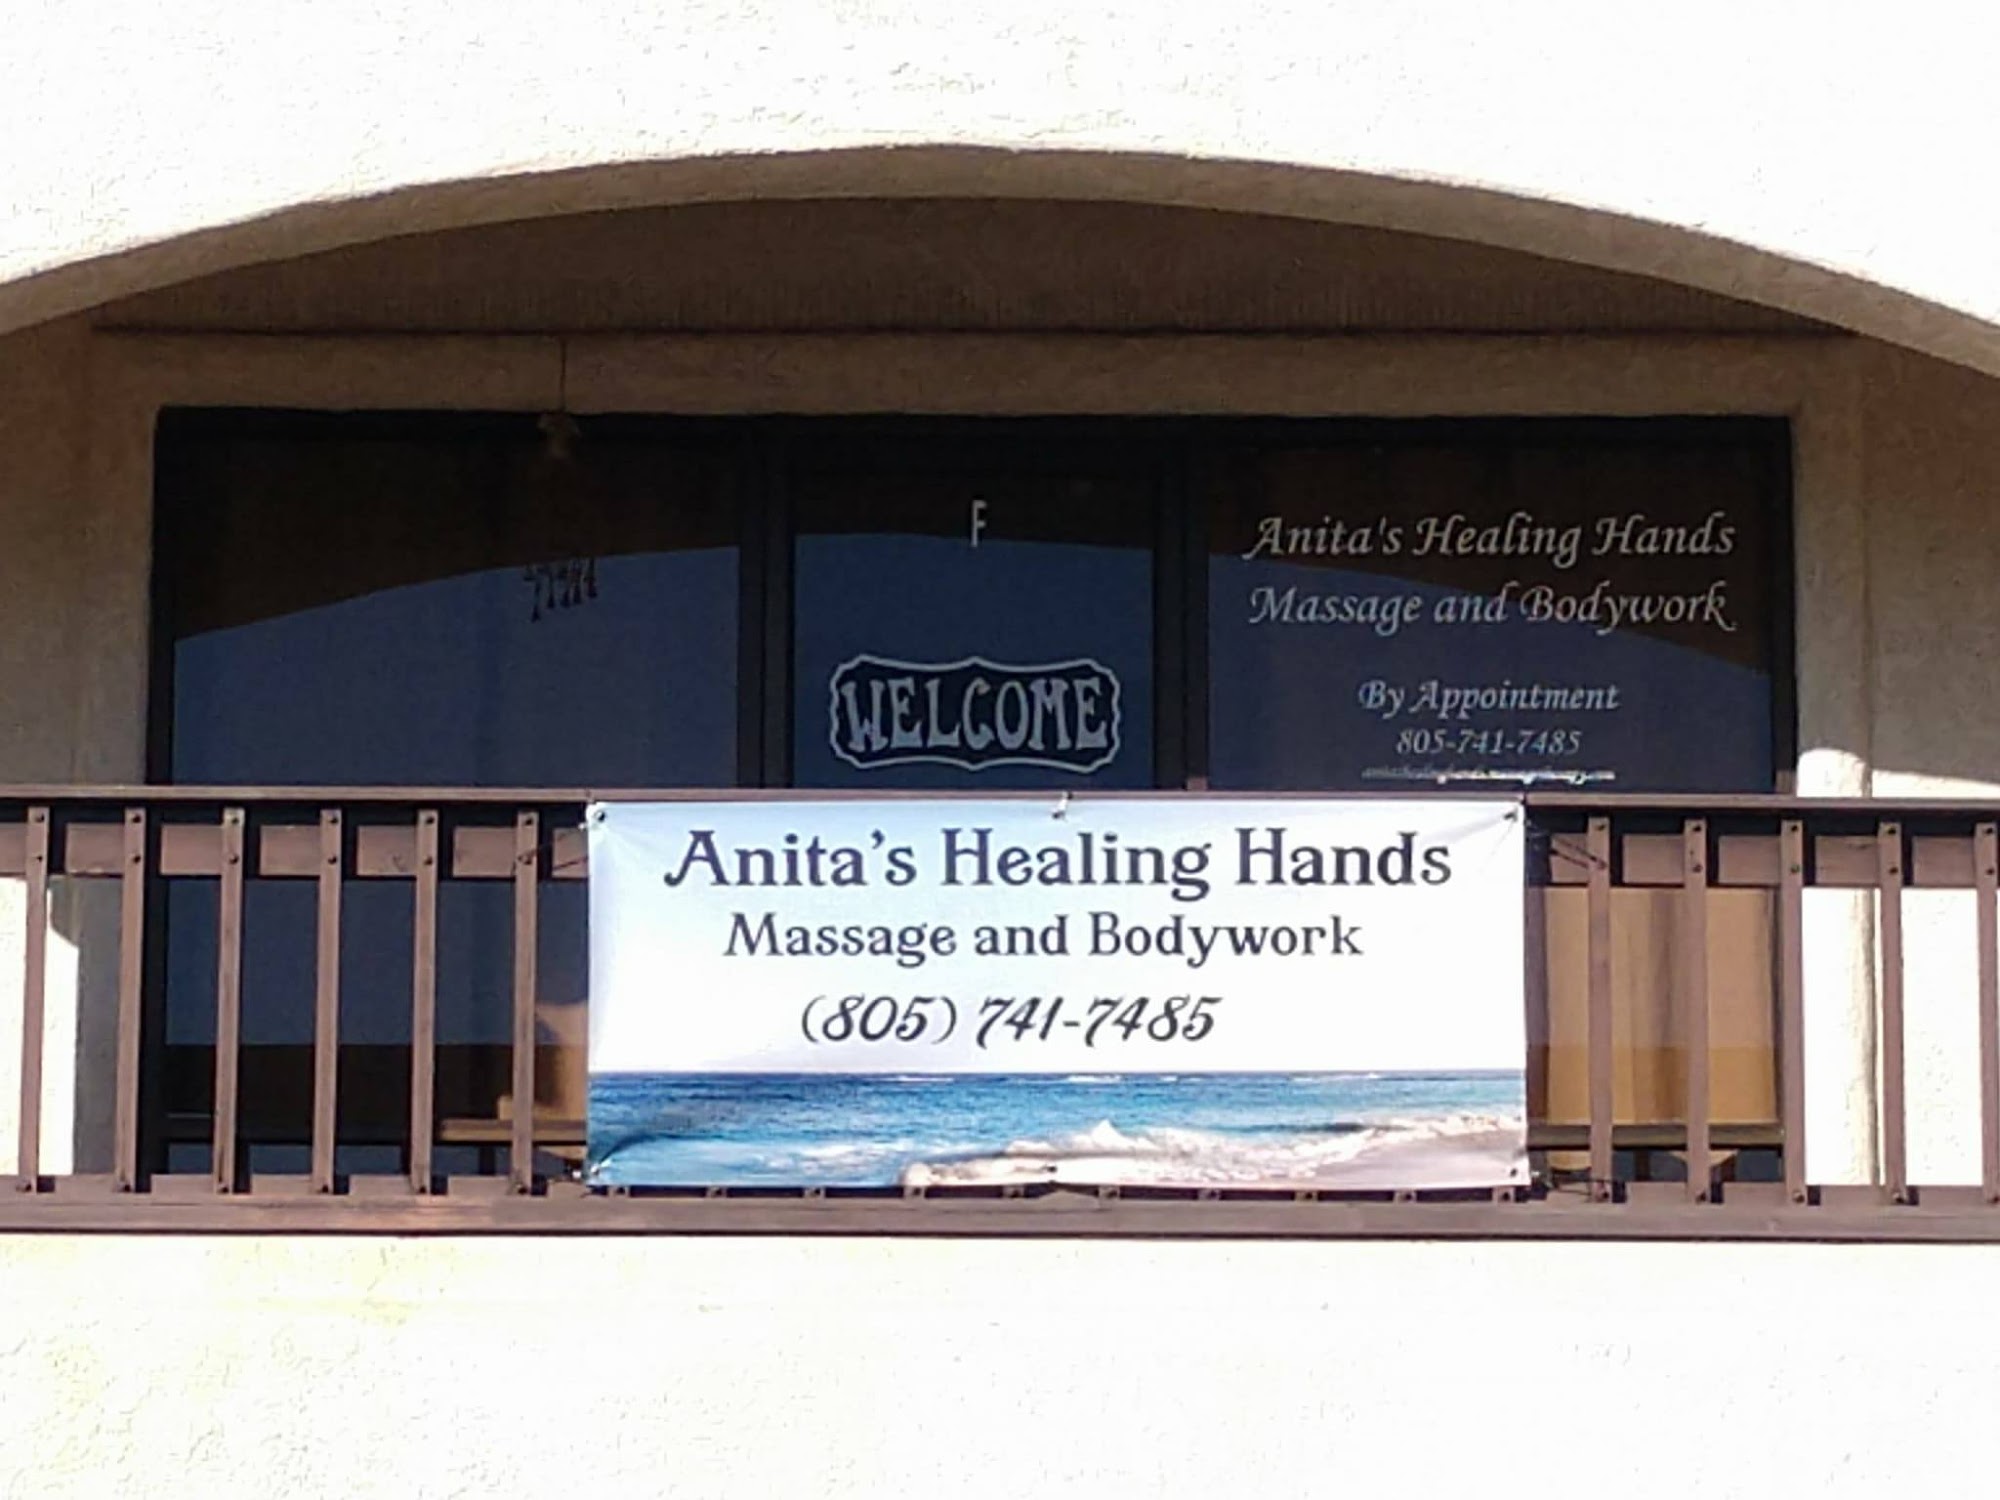 Anita's Healing Hands